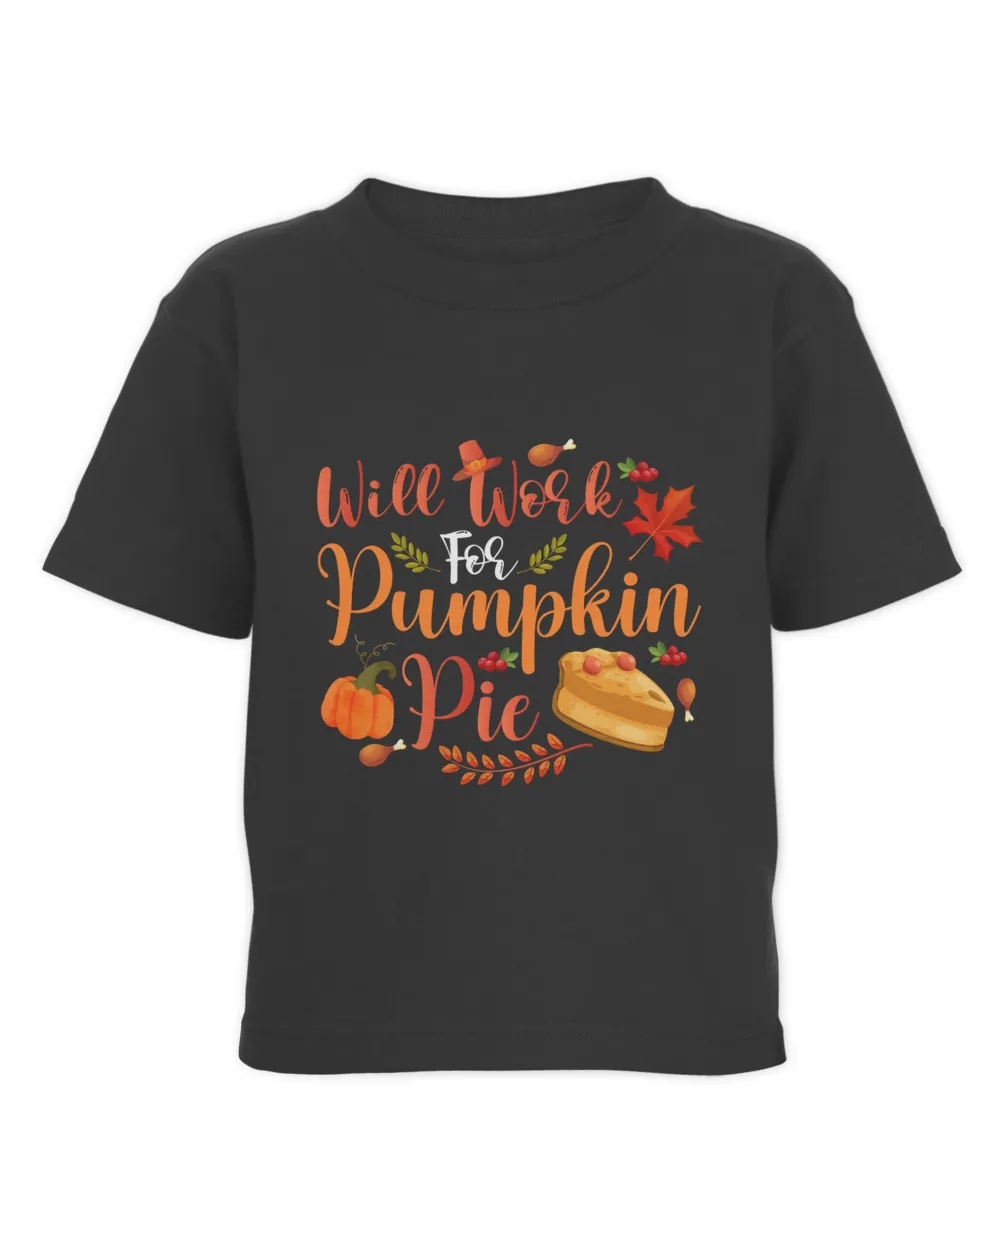 Will work for pumpkin pie